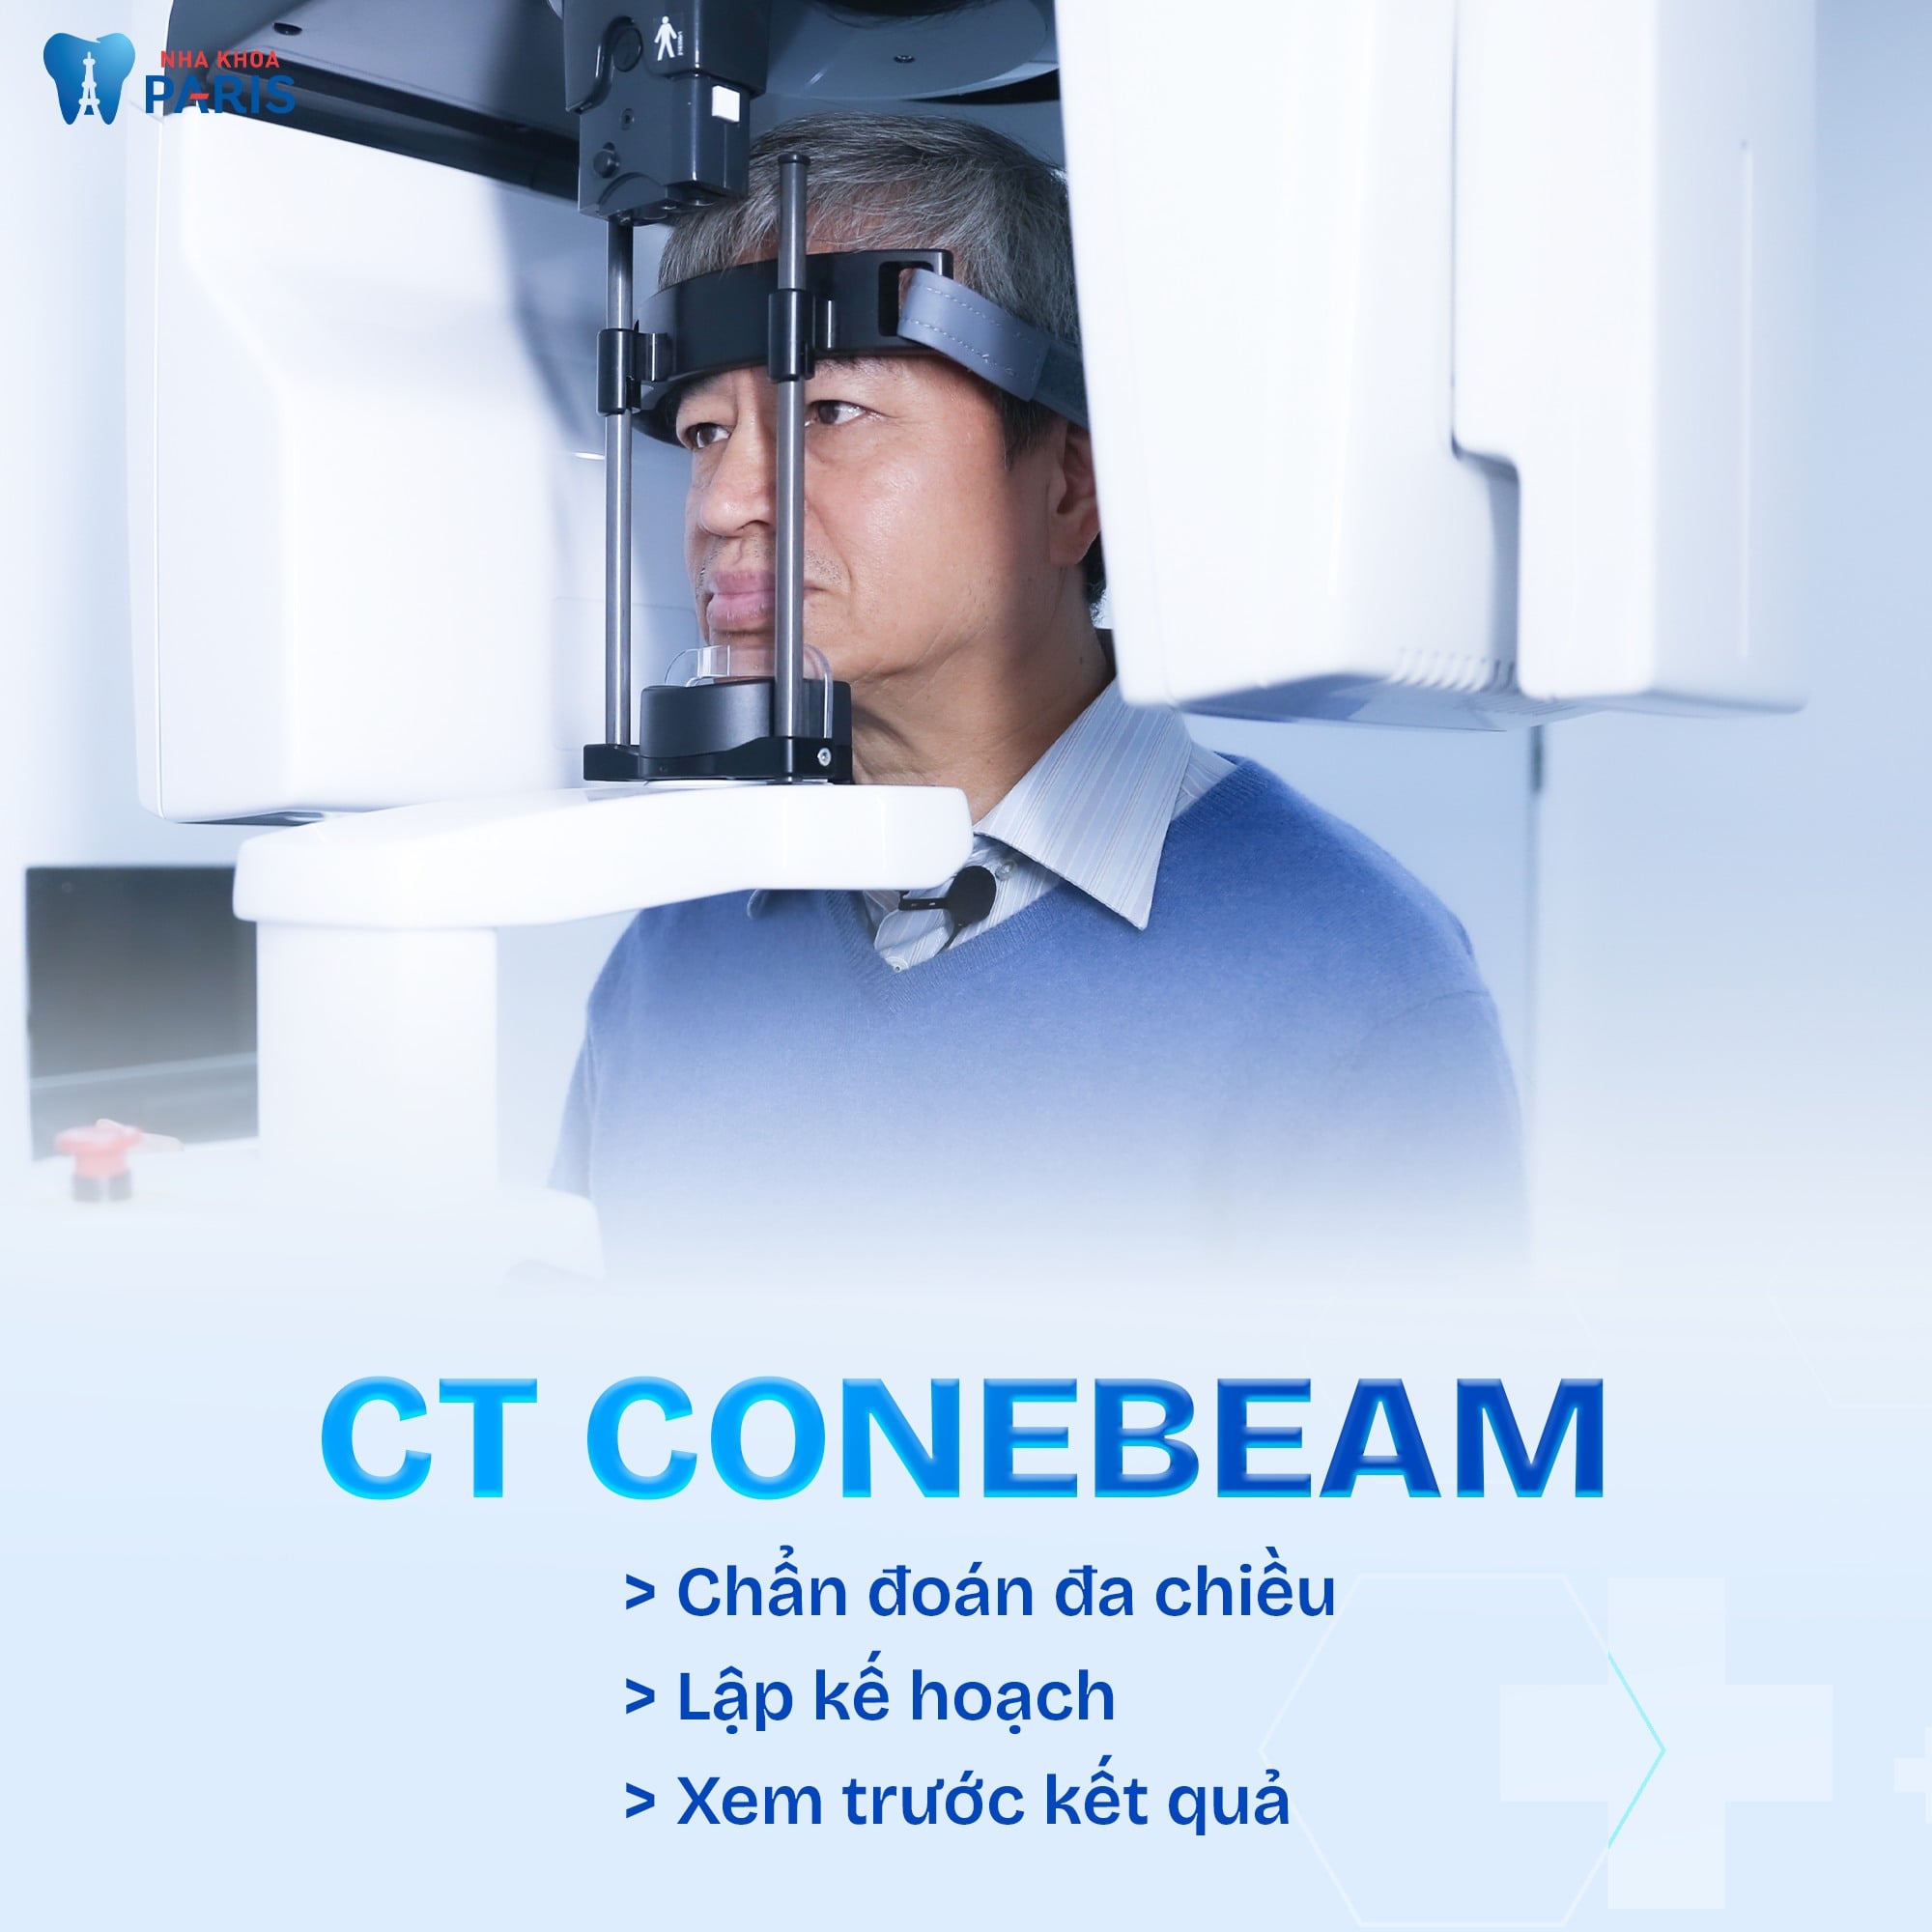 Nha Khoa Paris sử dụng máy chụp phim CT Conebeam hiện đại